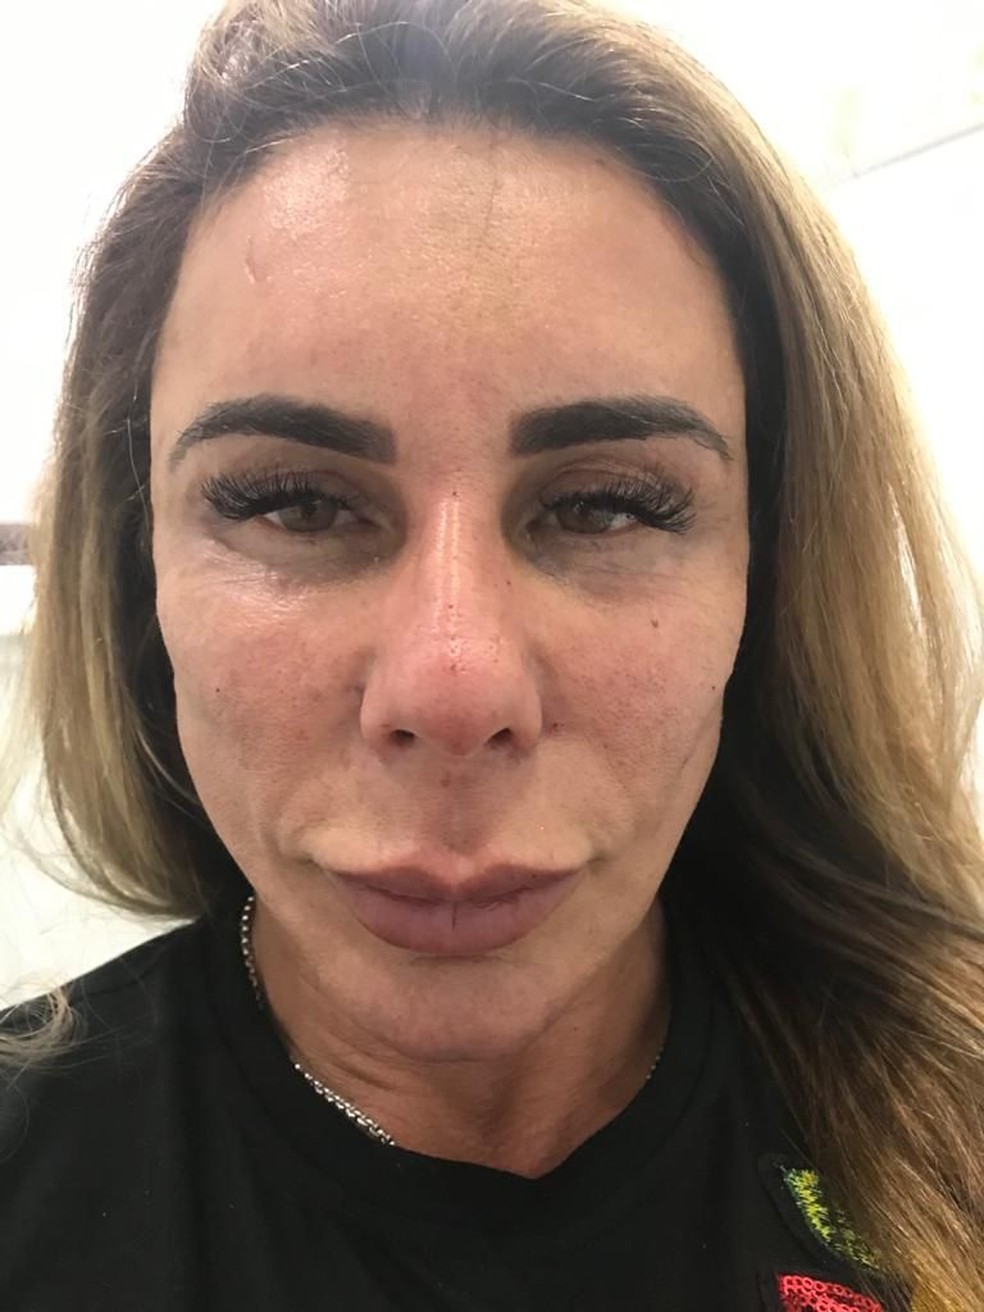 Andrea Sunshine após harmonização facial malsucedida — Foto: Divulgação